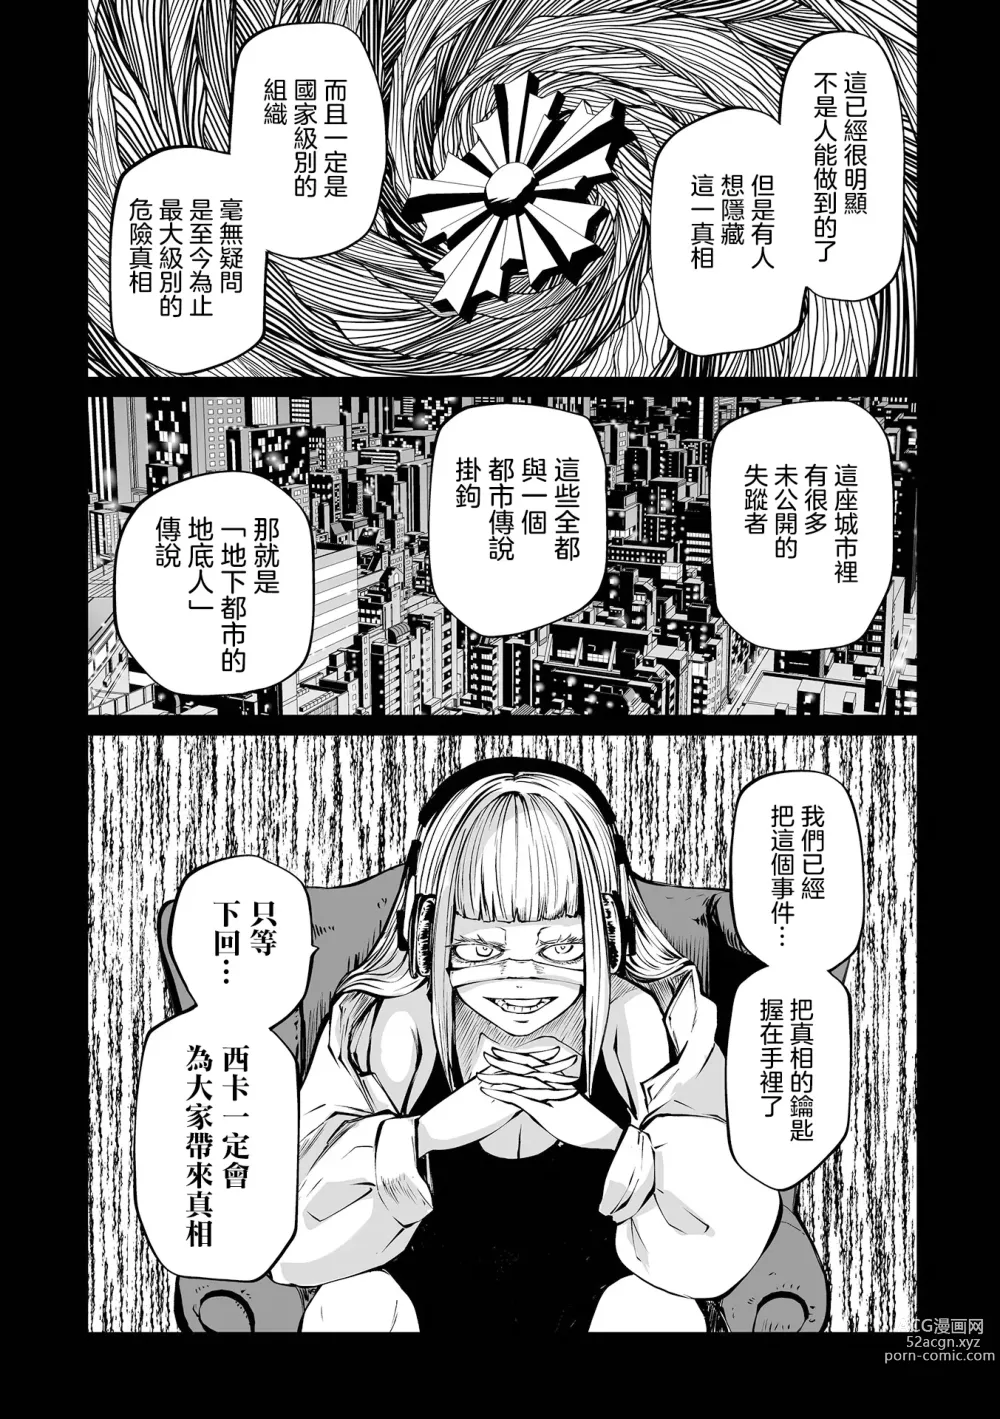 Page 51 of manga 地下生活